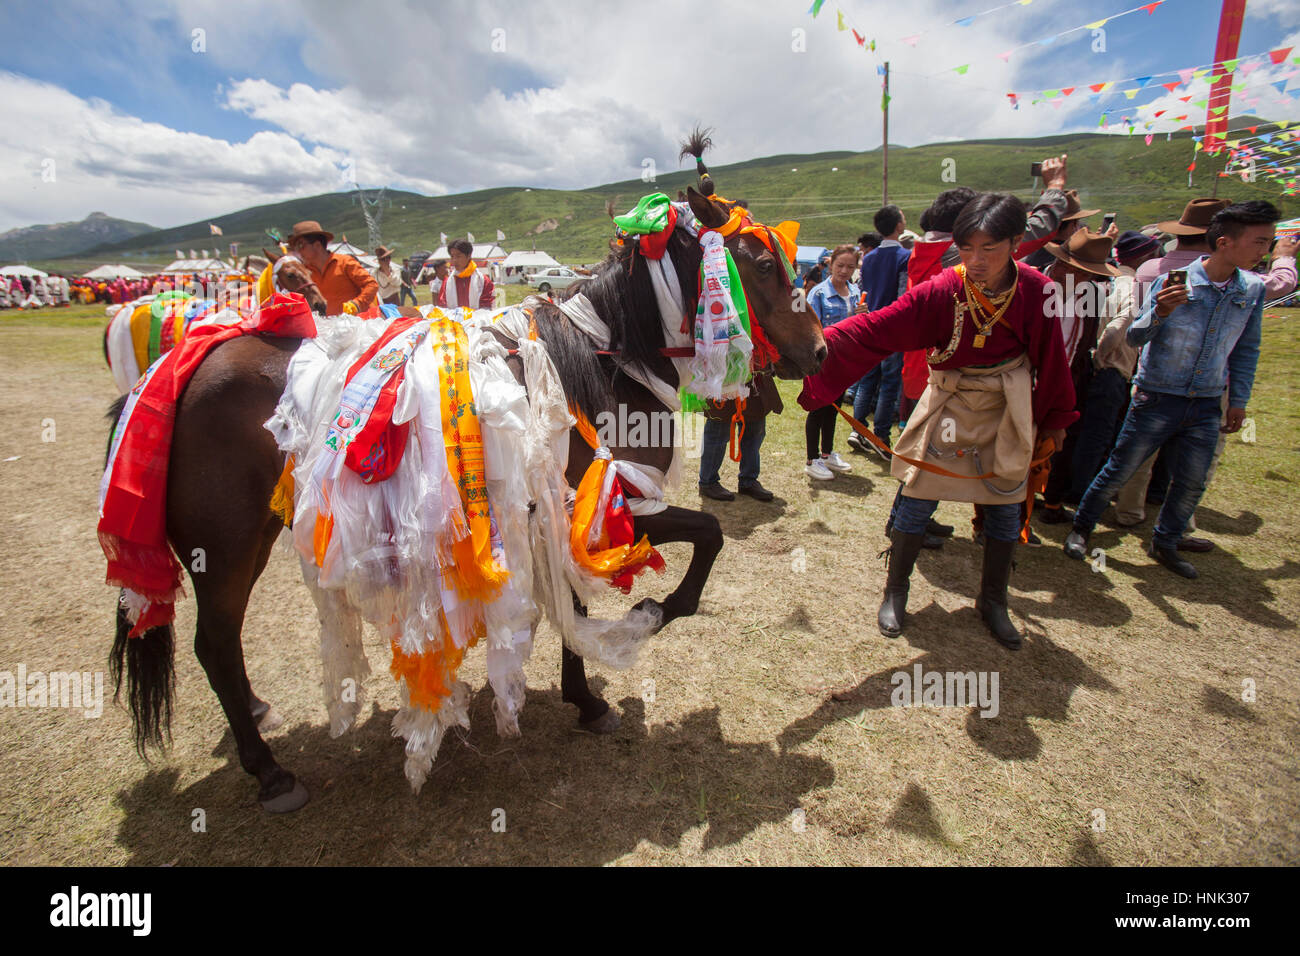 Il vincitore sfilata di cavalli alla festa durante la Manigango Horse Festival nell'altopiano tibetano in Sichuan, in Cina. Foto Stock